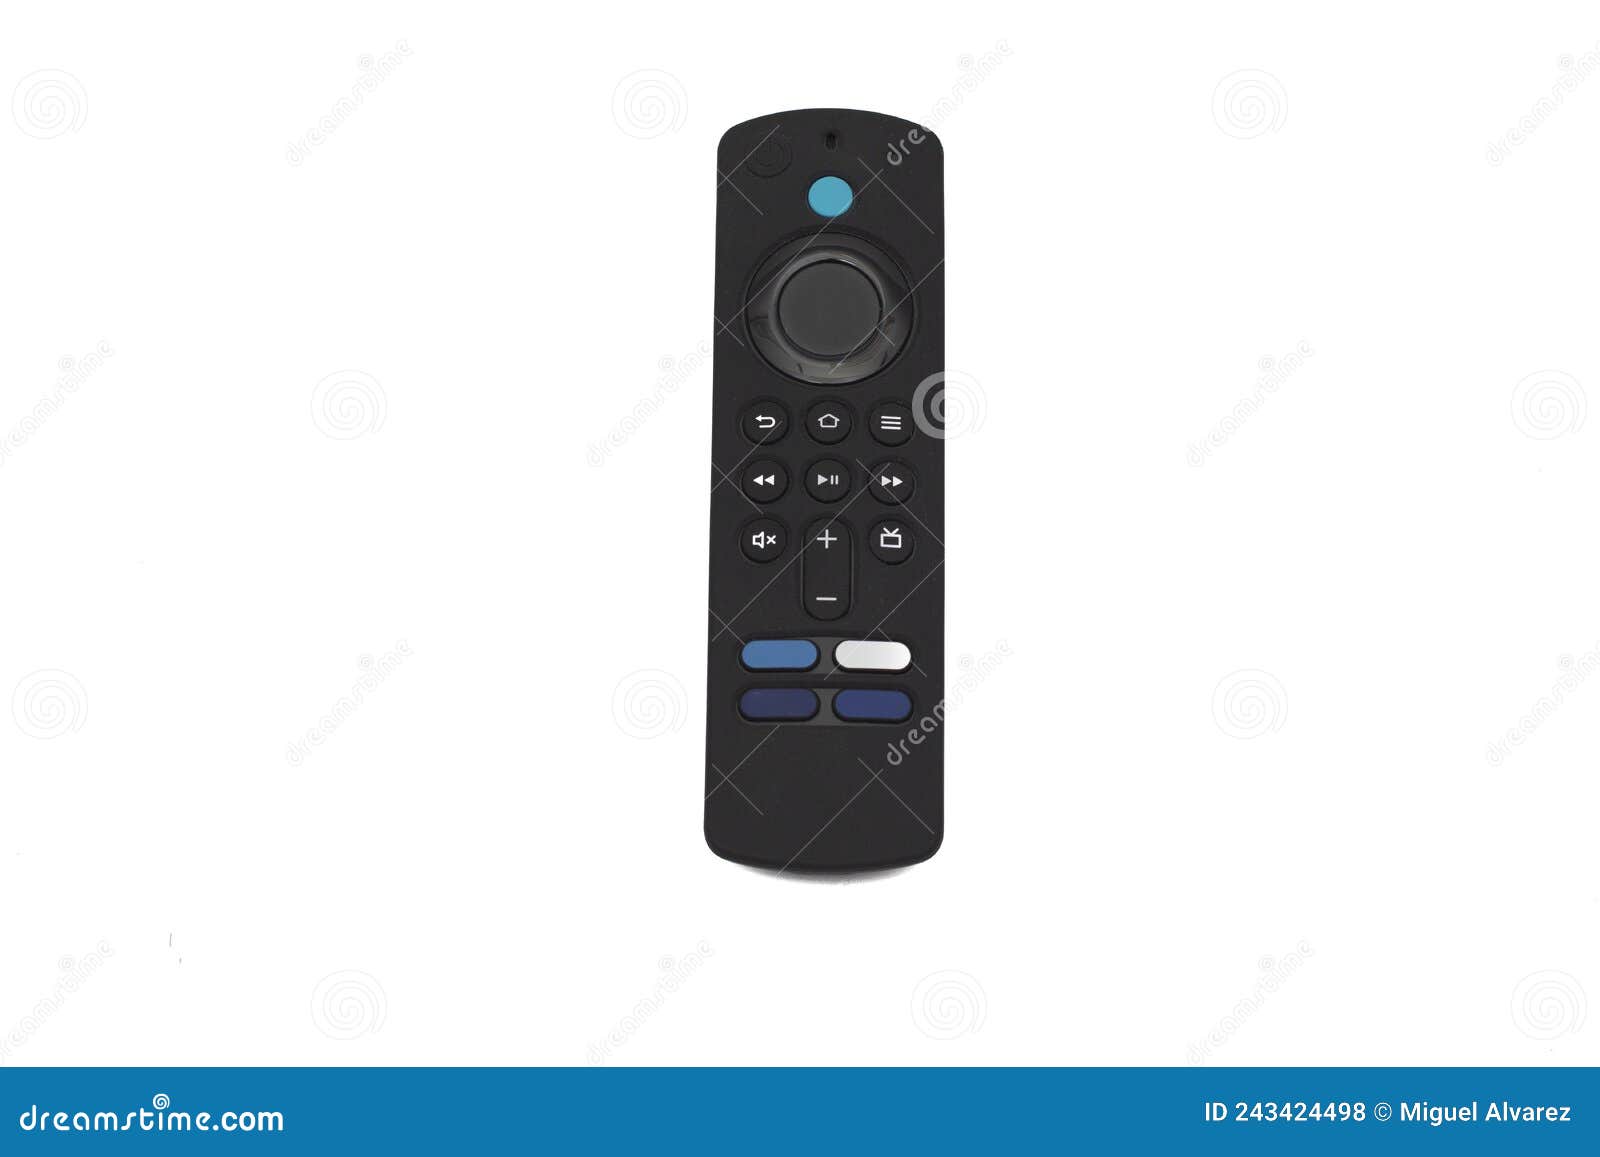 Mejor Control Remoto Tv También Controlado Por Voz Foto de archivo de blanco, amazonas: 243424498